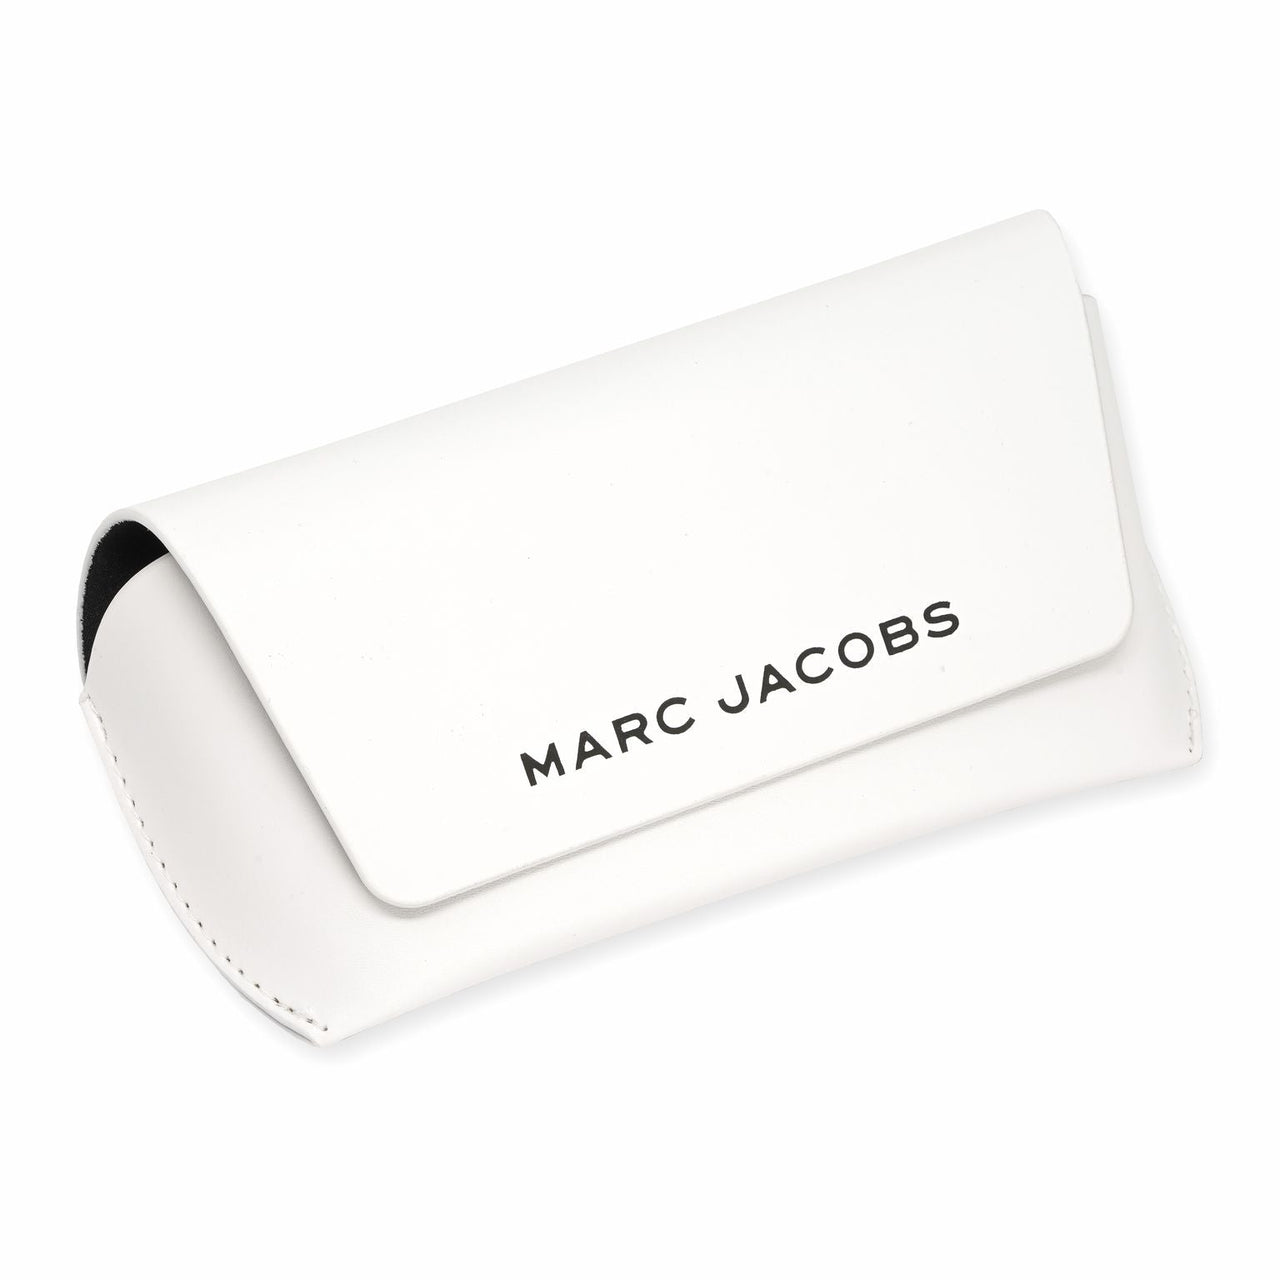 Marc Jacobs Women's Round Sunglasses Ruthenium Grey MARC 102/S 6LB